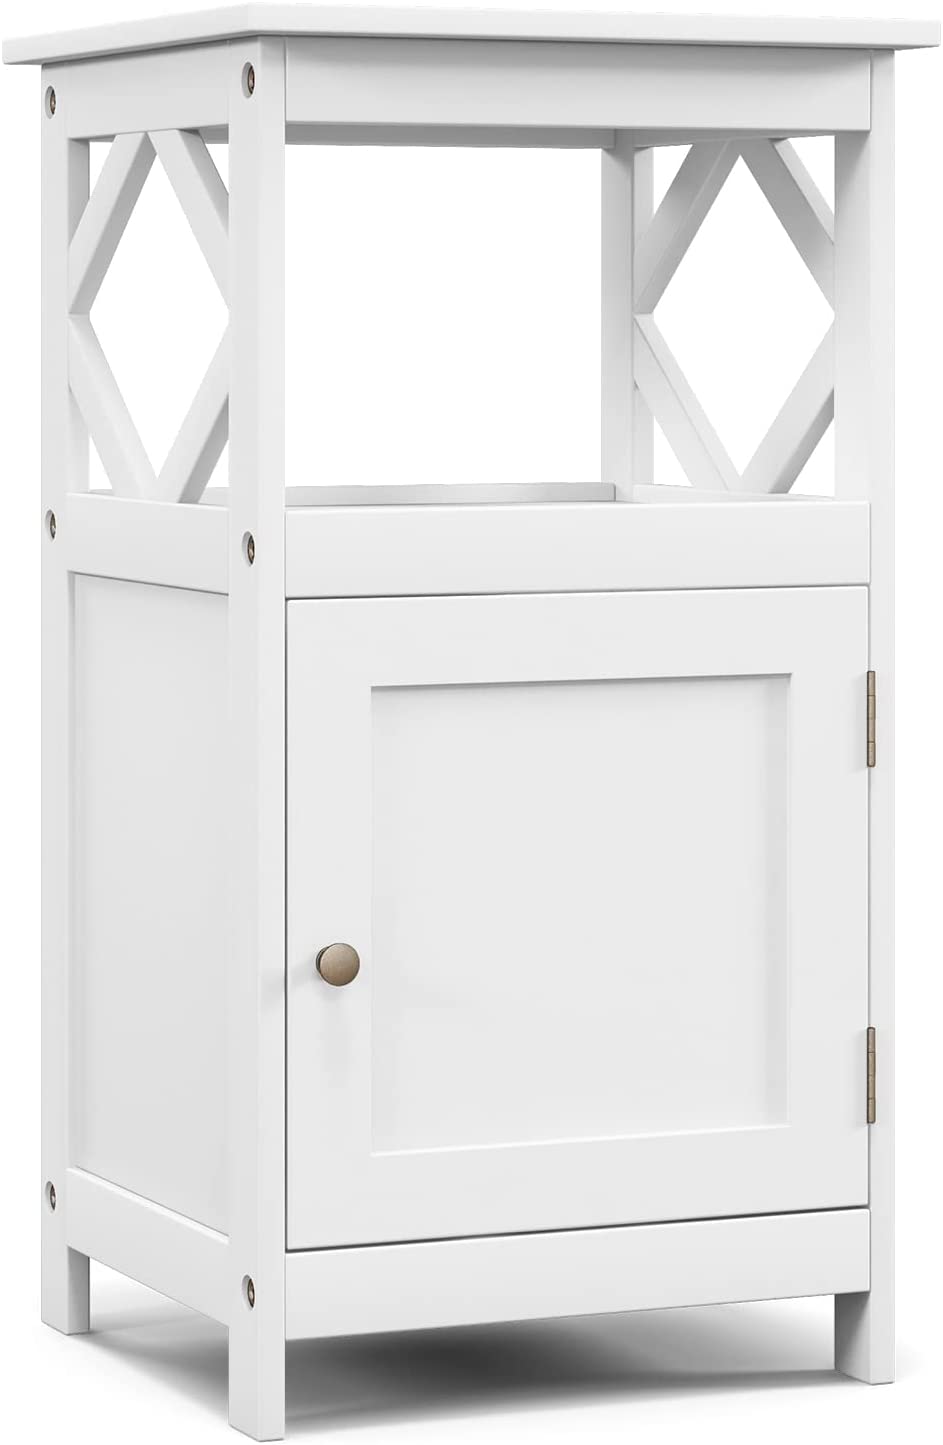 Giantex Bathroom Floor Storage Cabinet - Versatile Small Towel Cabinet with Door and Shelf